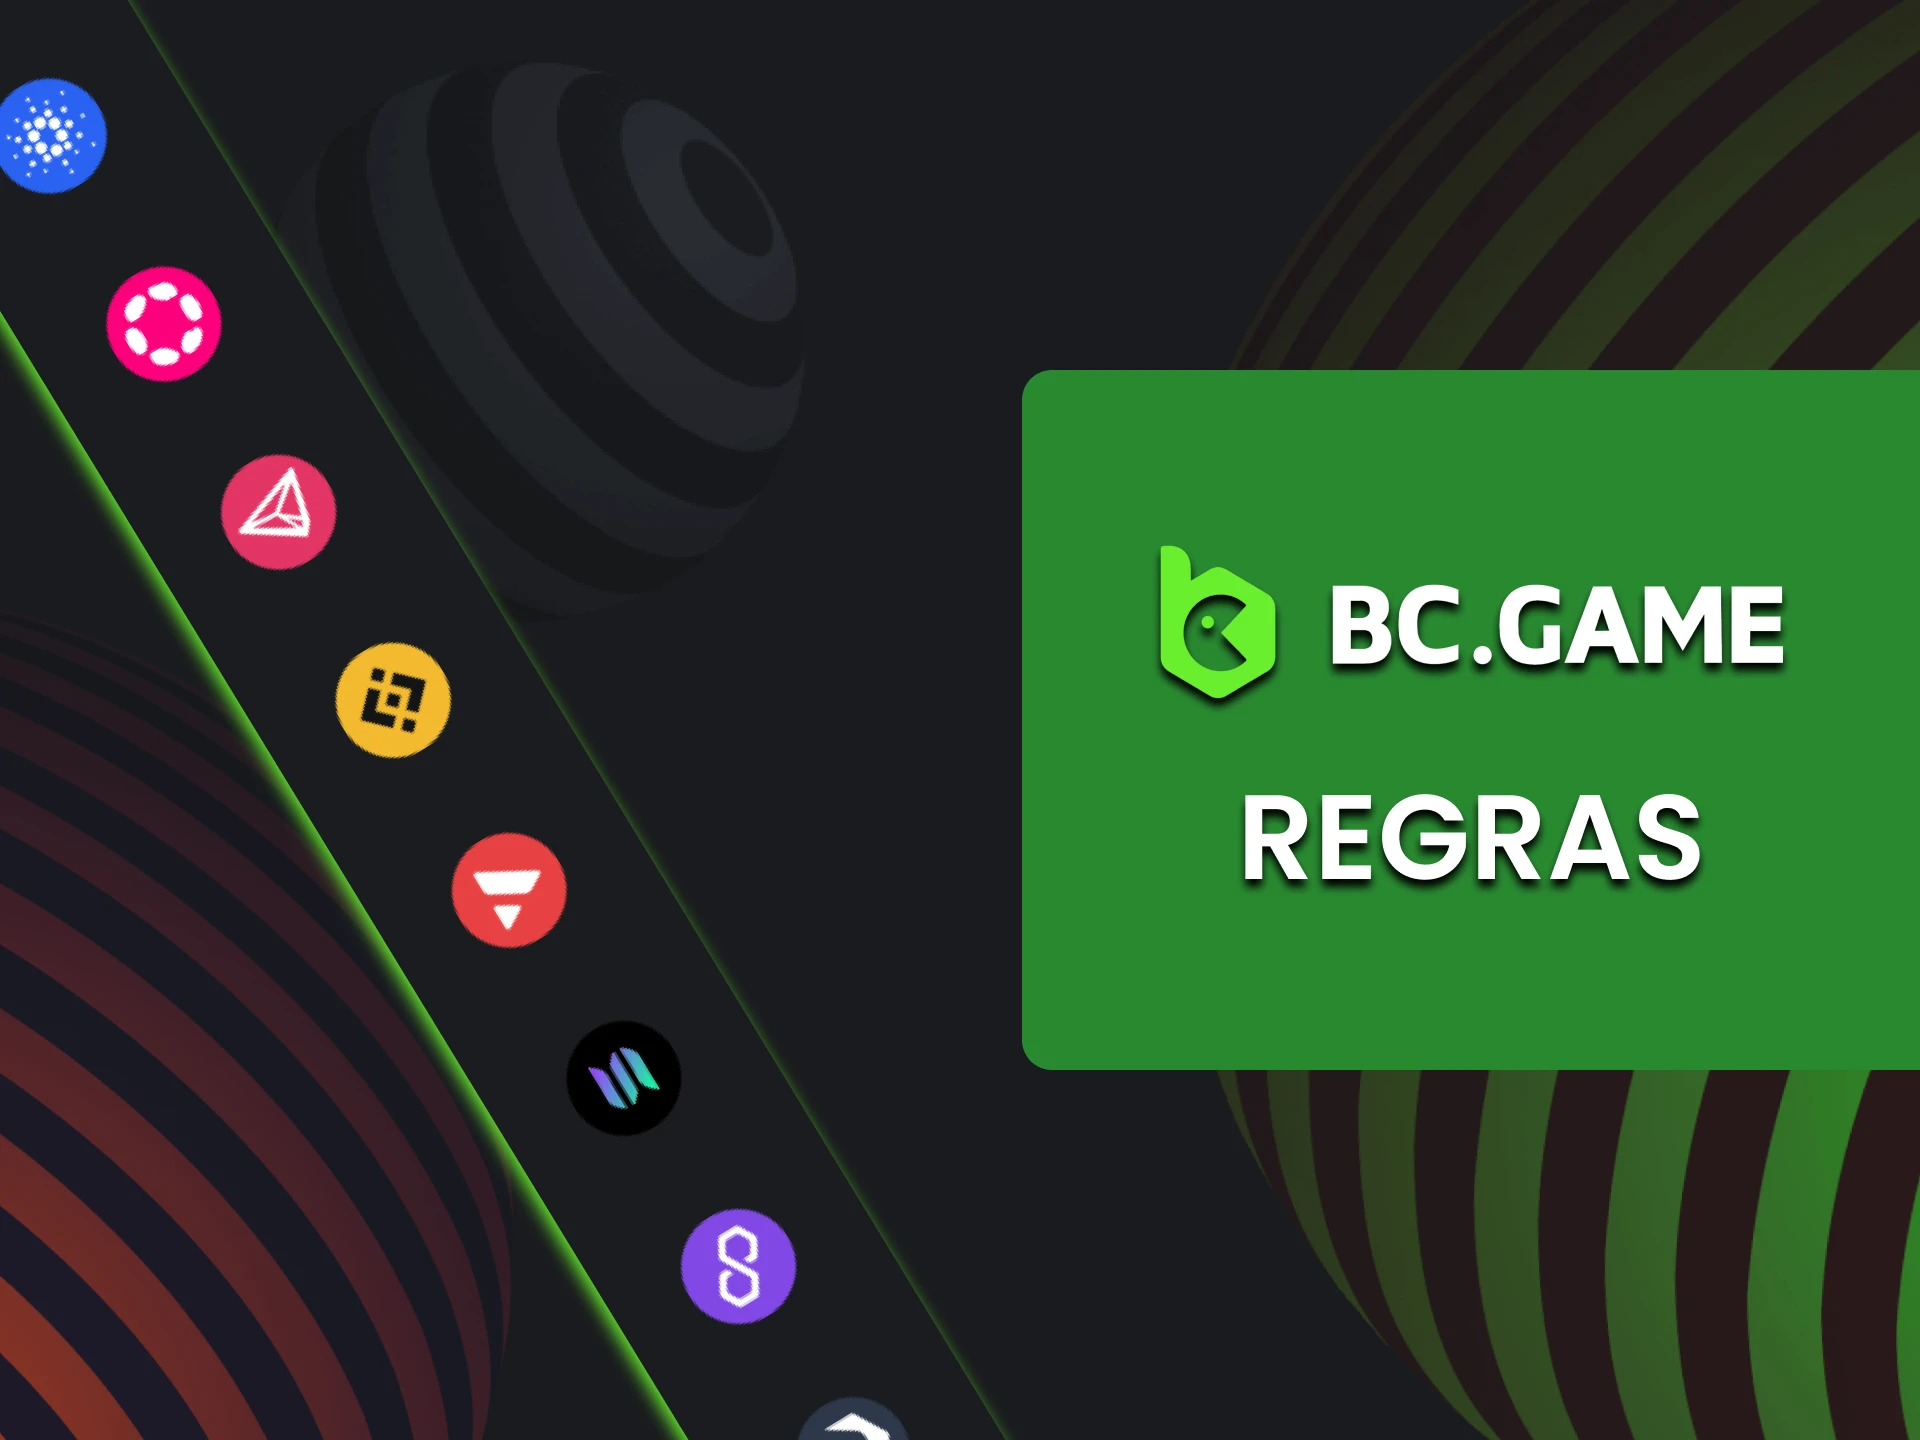 Cobriremos os requisitos de retirada no site do BC Game.